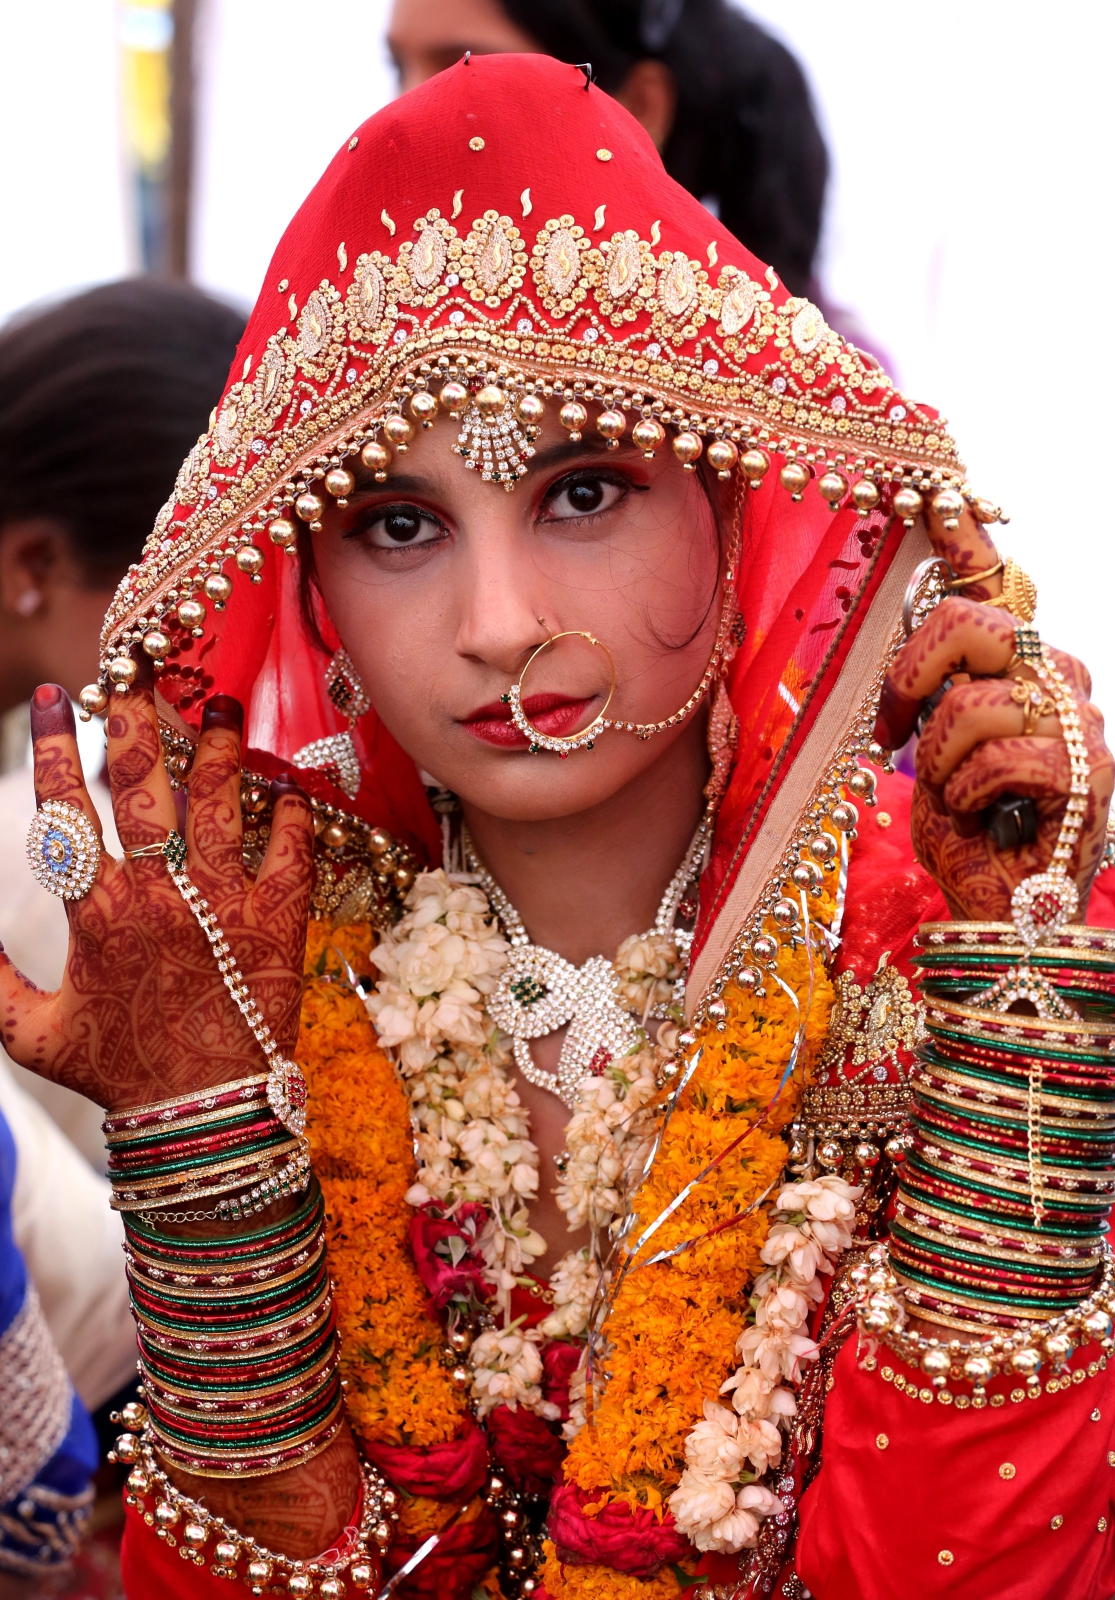 Masowe śluby w Indiach. Fot. PAP/EPA/SANJEEV GUPTA